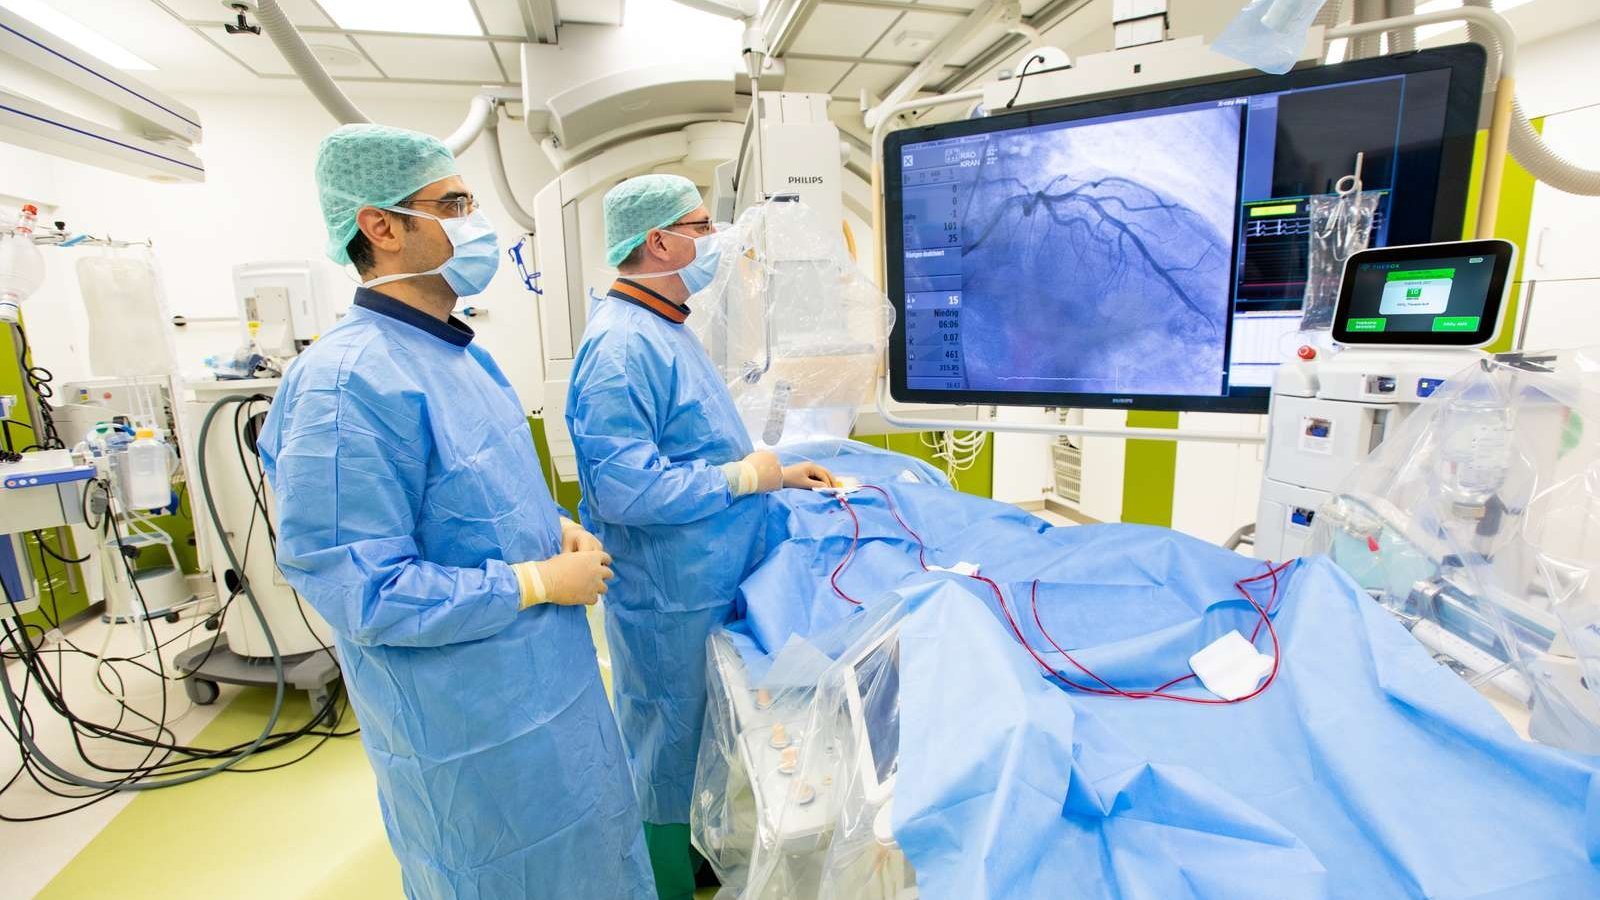 Zwei Männer in OP-Schutzkleidung stehen in einem OP am Operationstisch, auf dem ein Patient mit blauem Laken zugedeckt liegt, und betrachten den Monitor über dem OP-Tisch. 